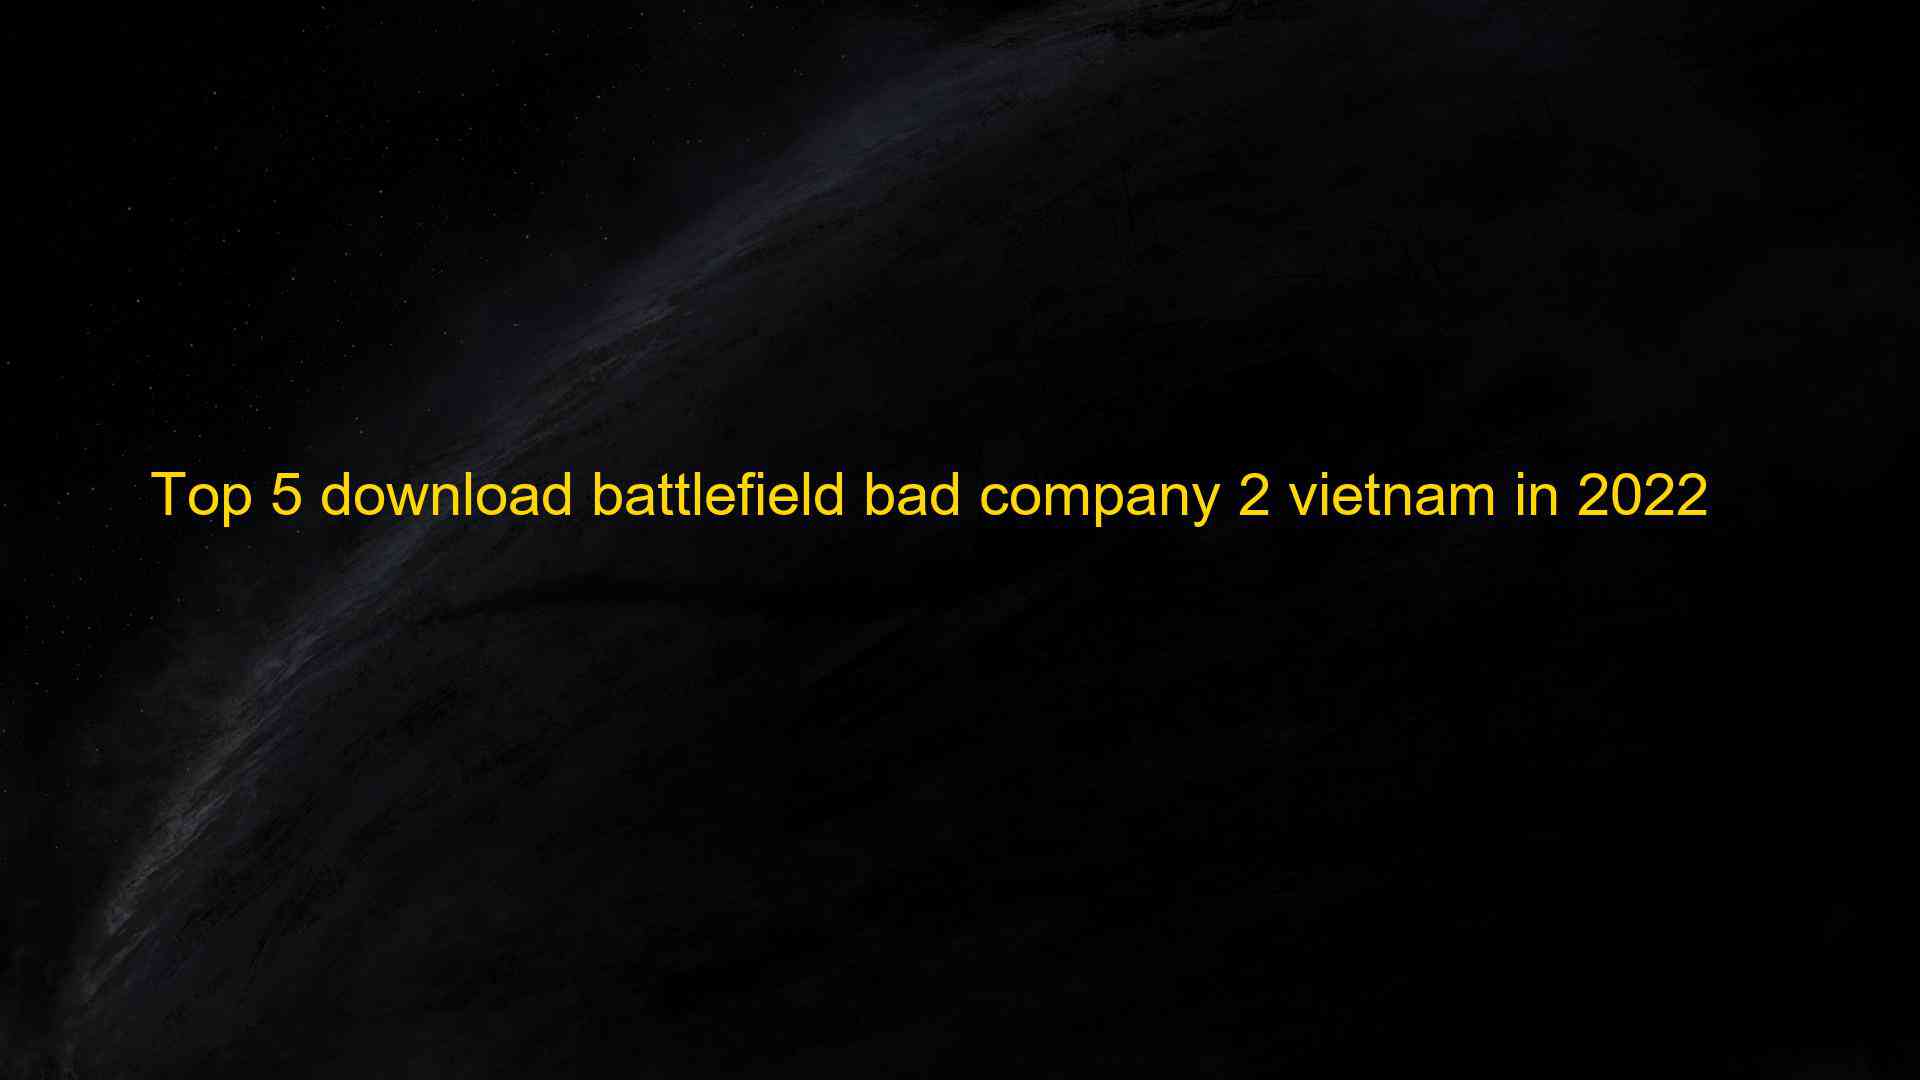 Top 5 download battlefield bad company 2 vietnam in 2022 1660084444